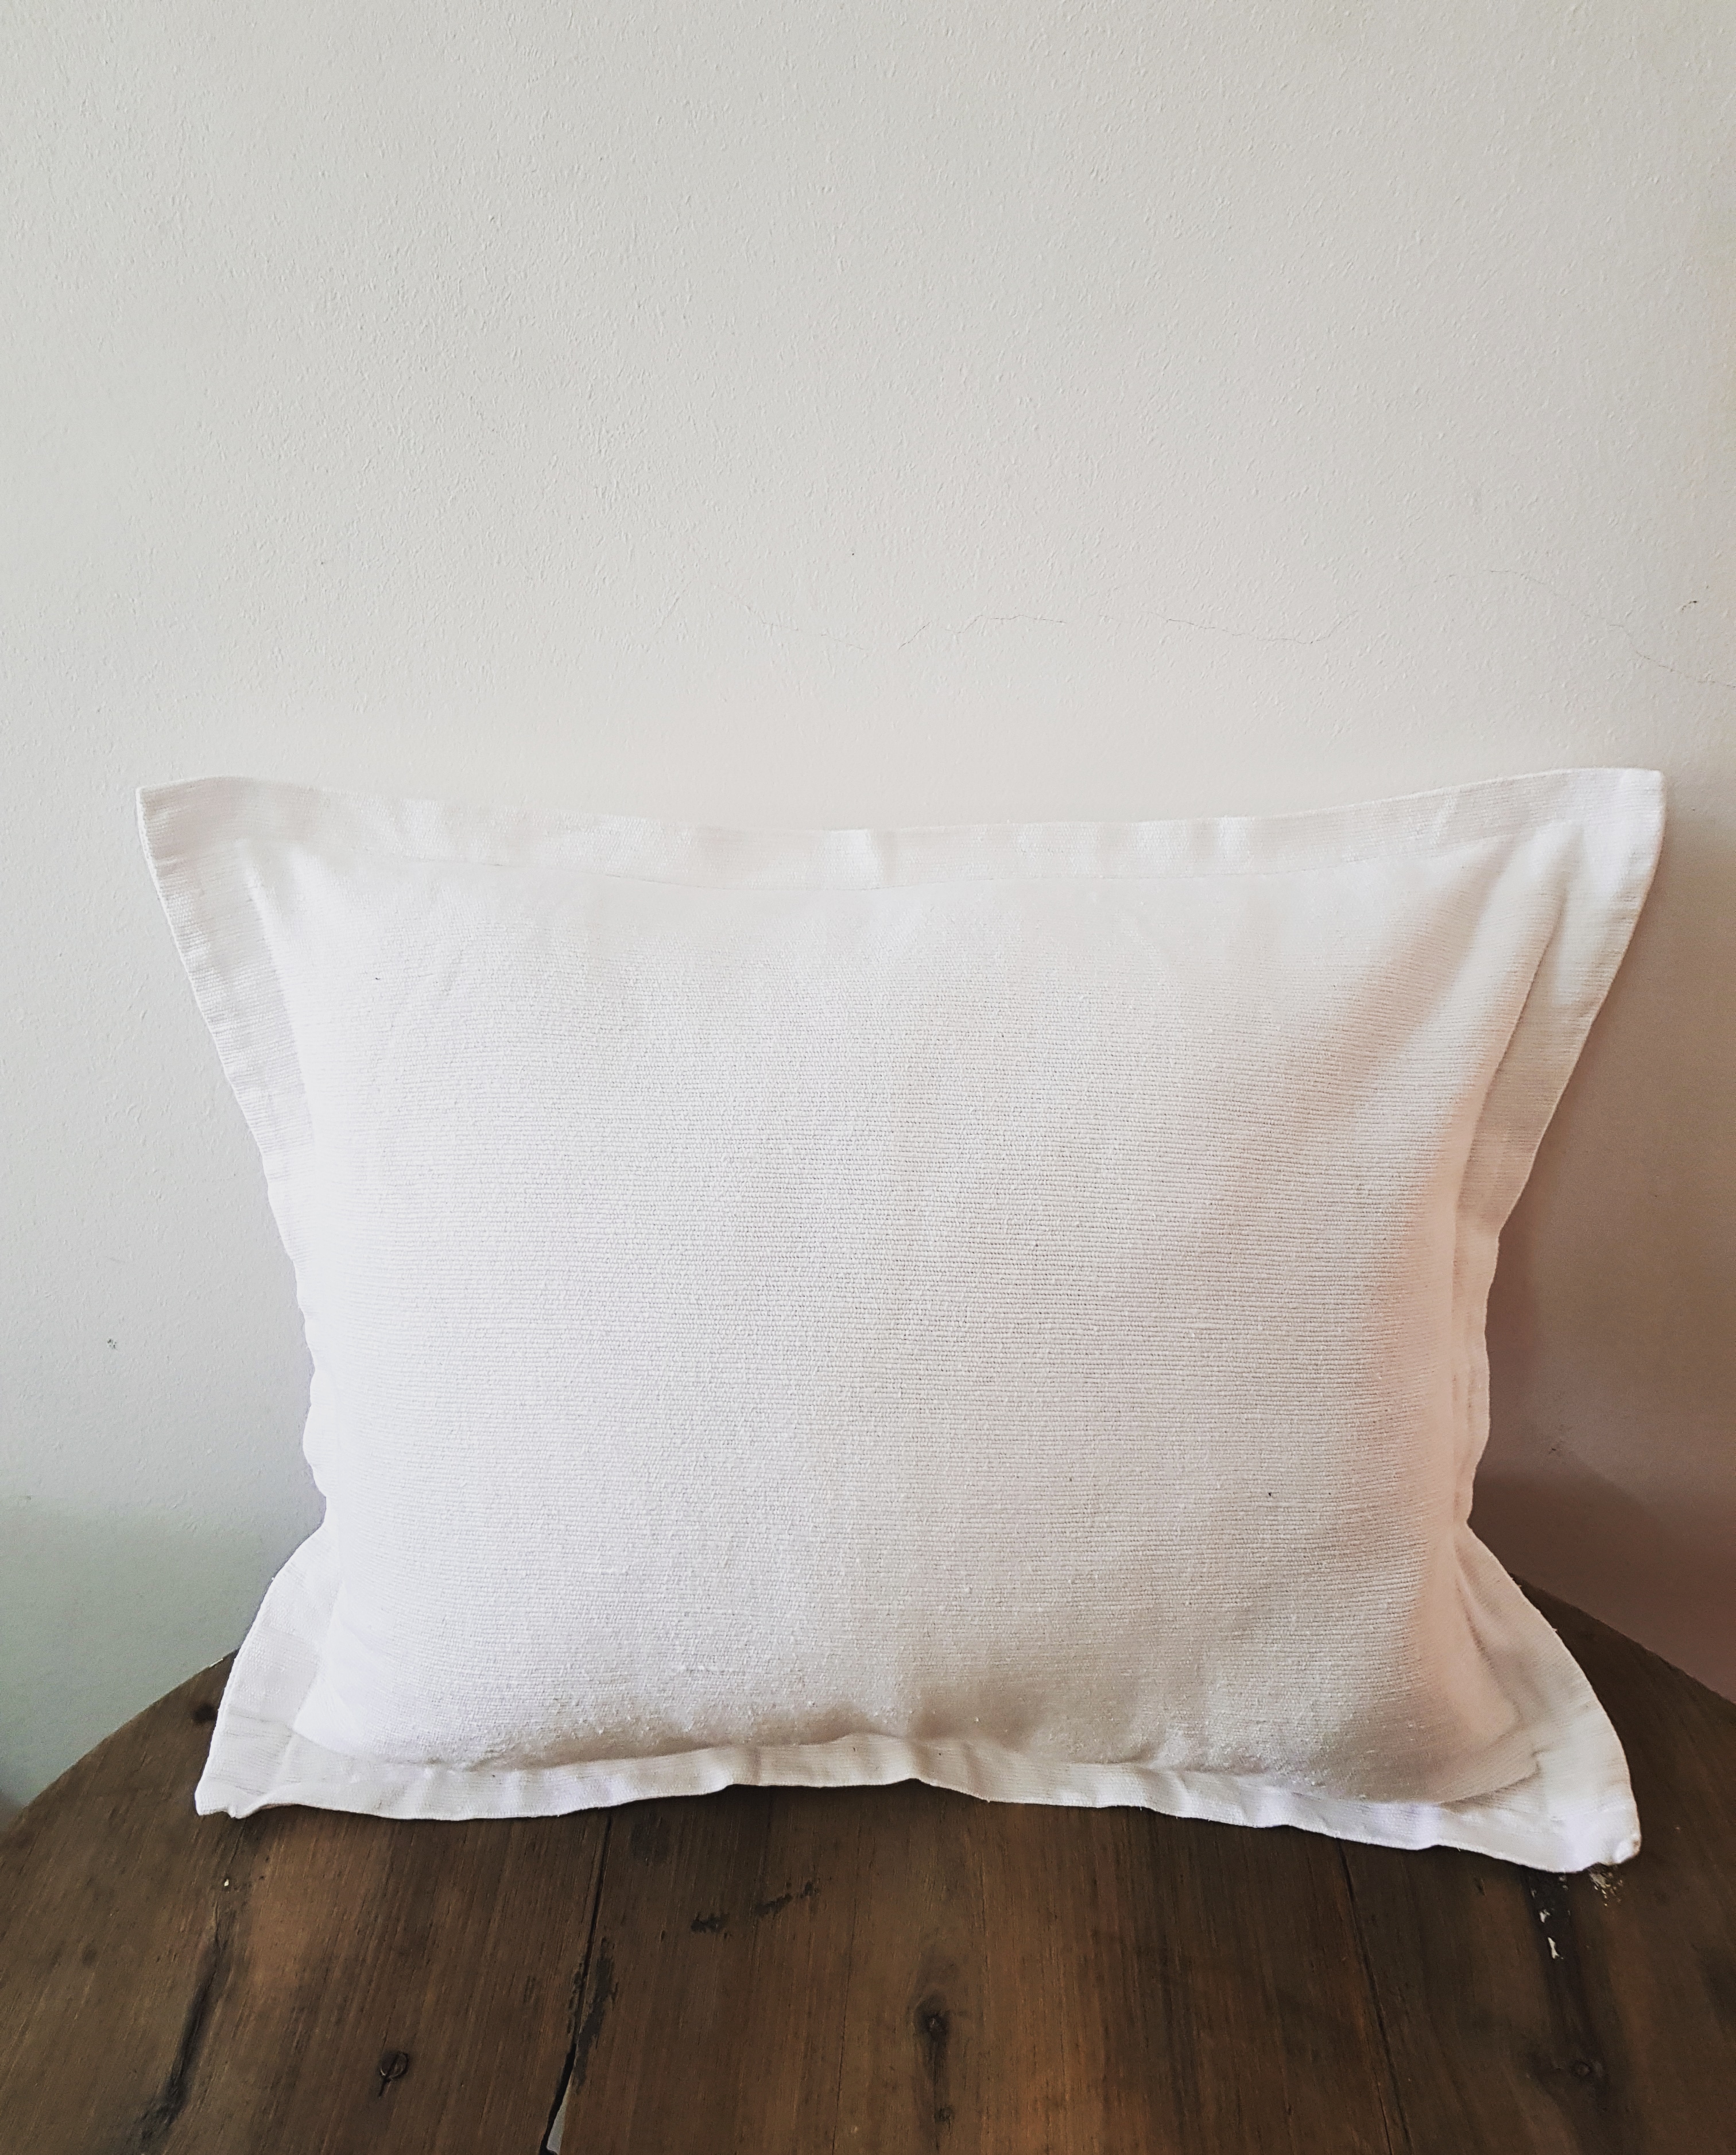 Plain- white scatter pillow